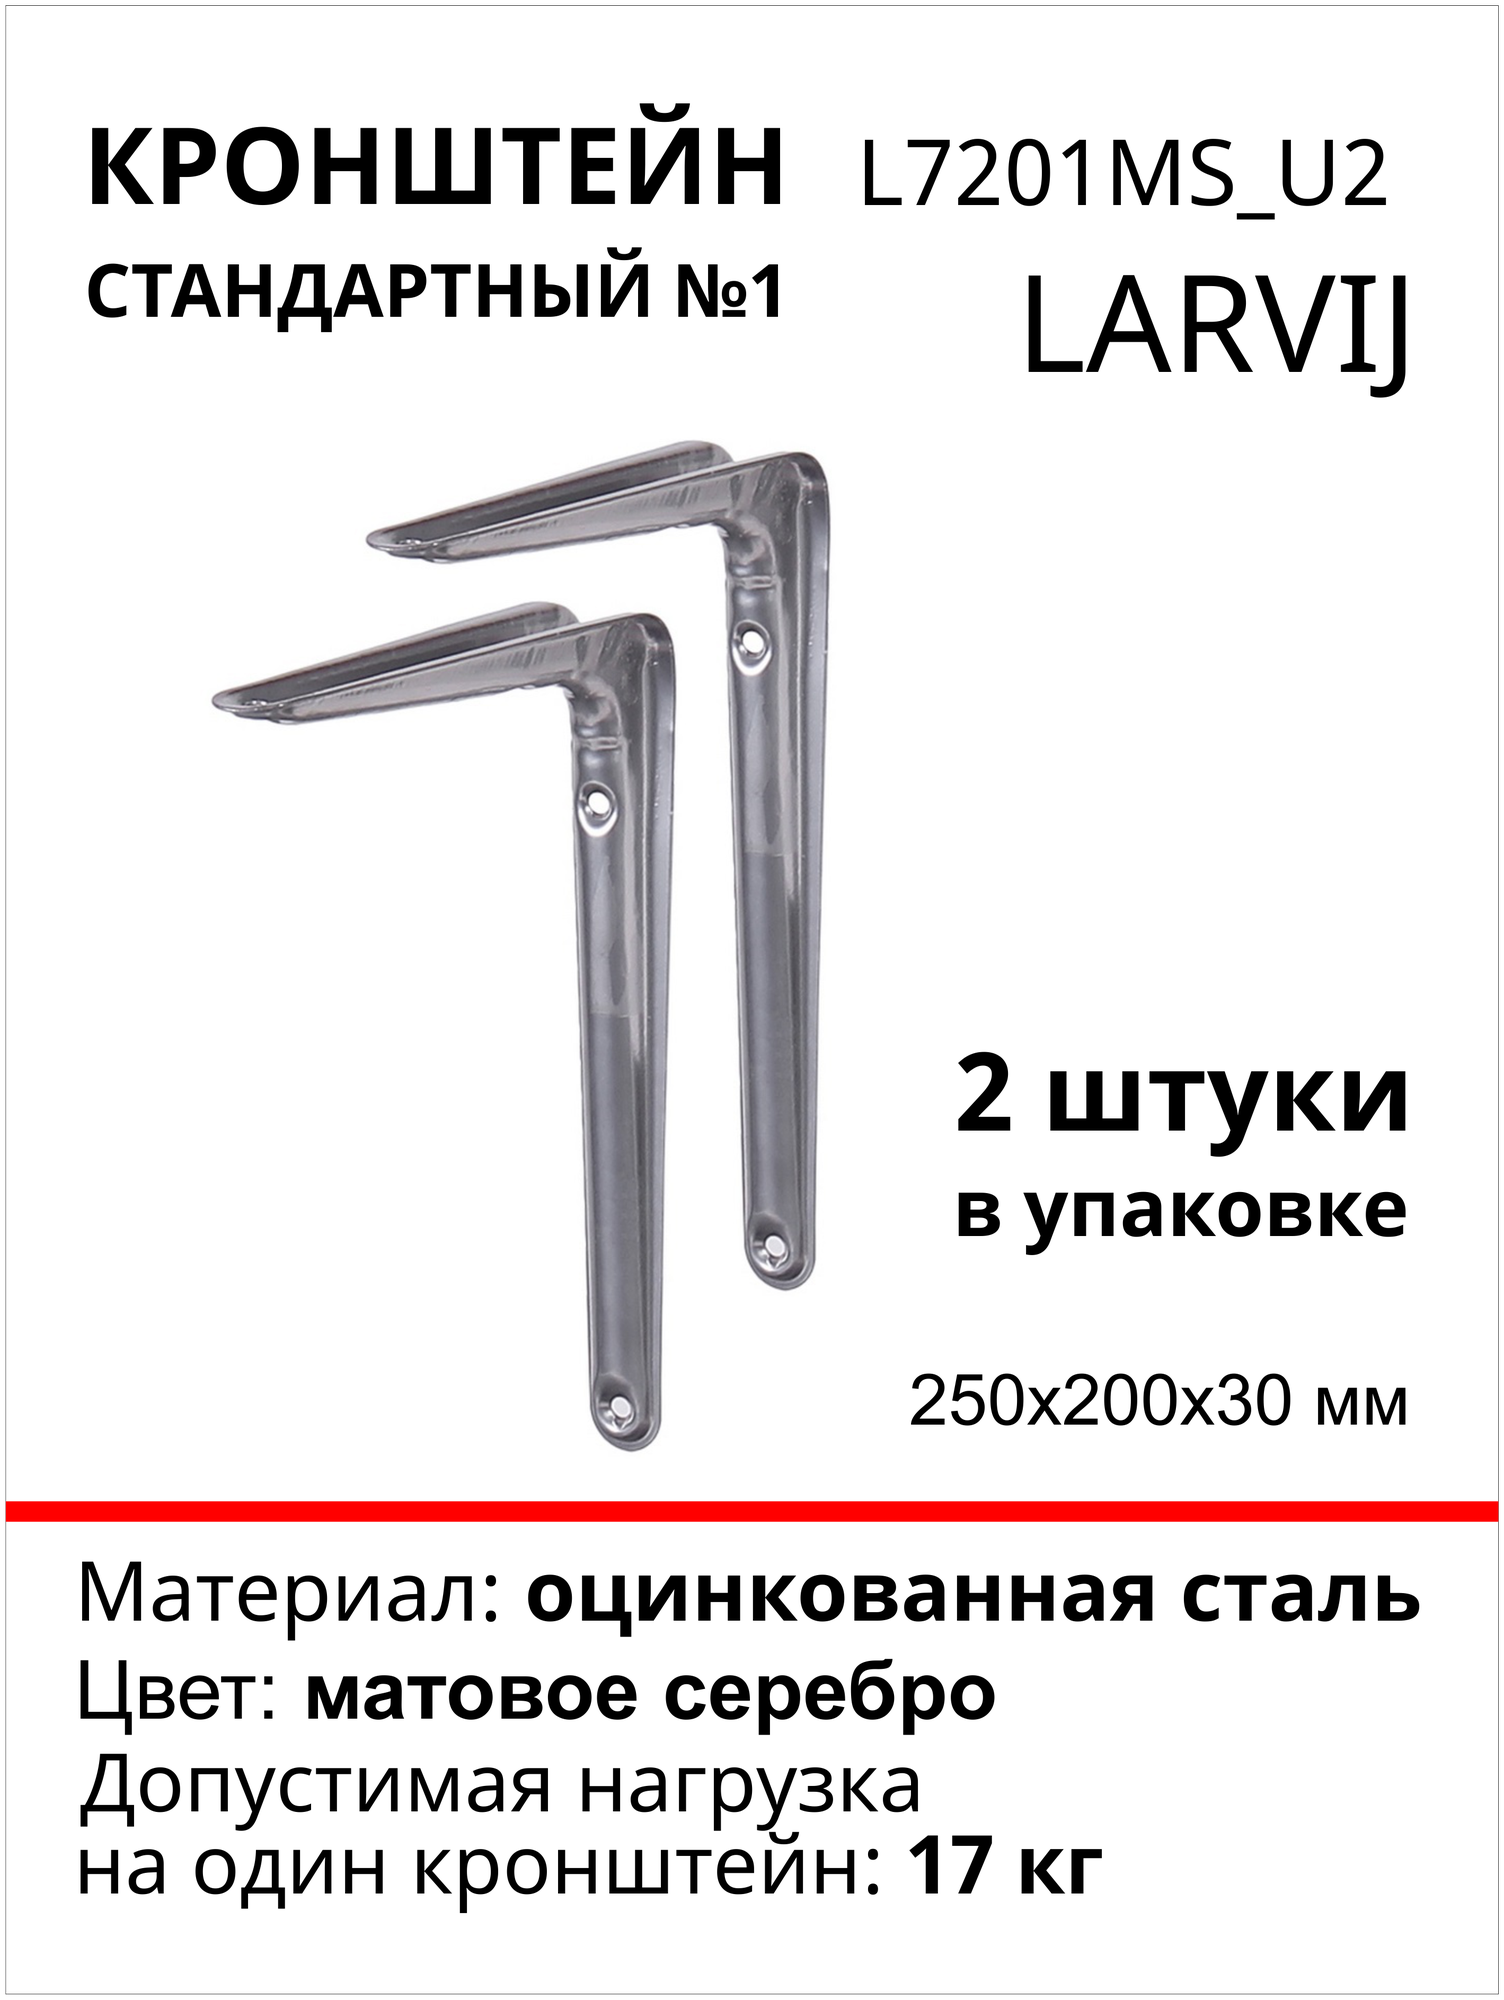 Кронштейн для полки larvij, 200х200х30мм, сталь, цвет: матовое серебро, нагрузка до 17кг, 2 шт, L7201MS_U2